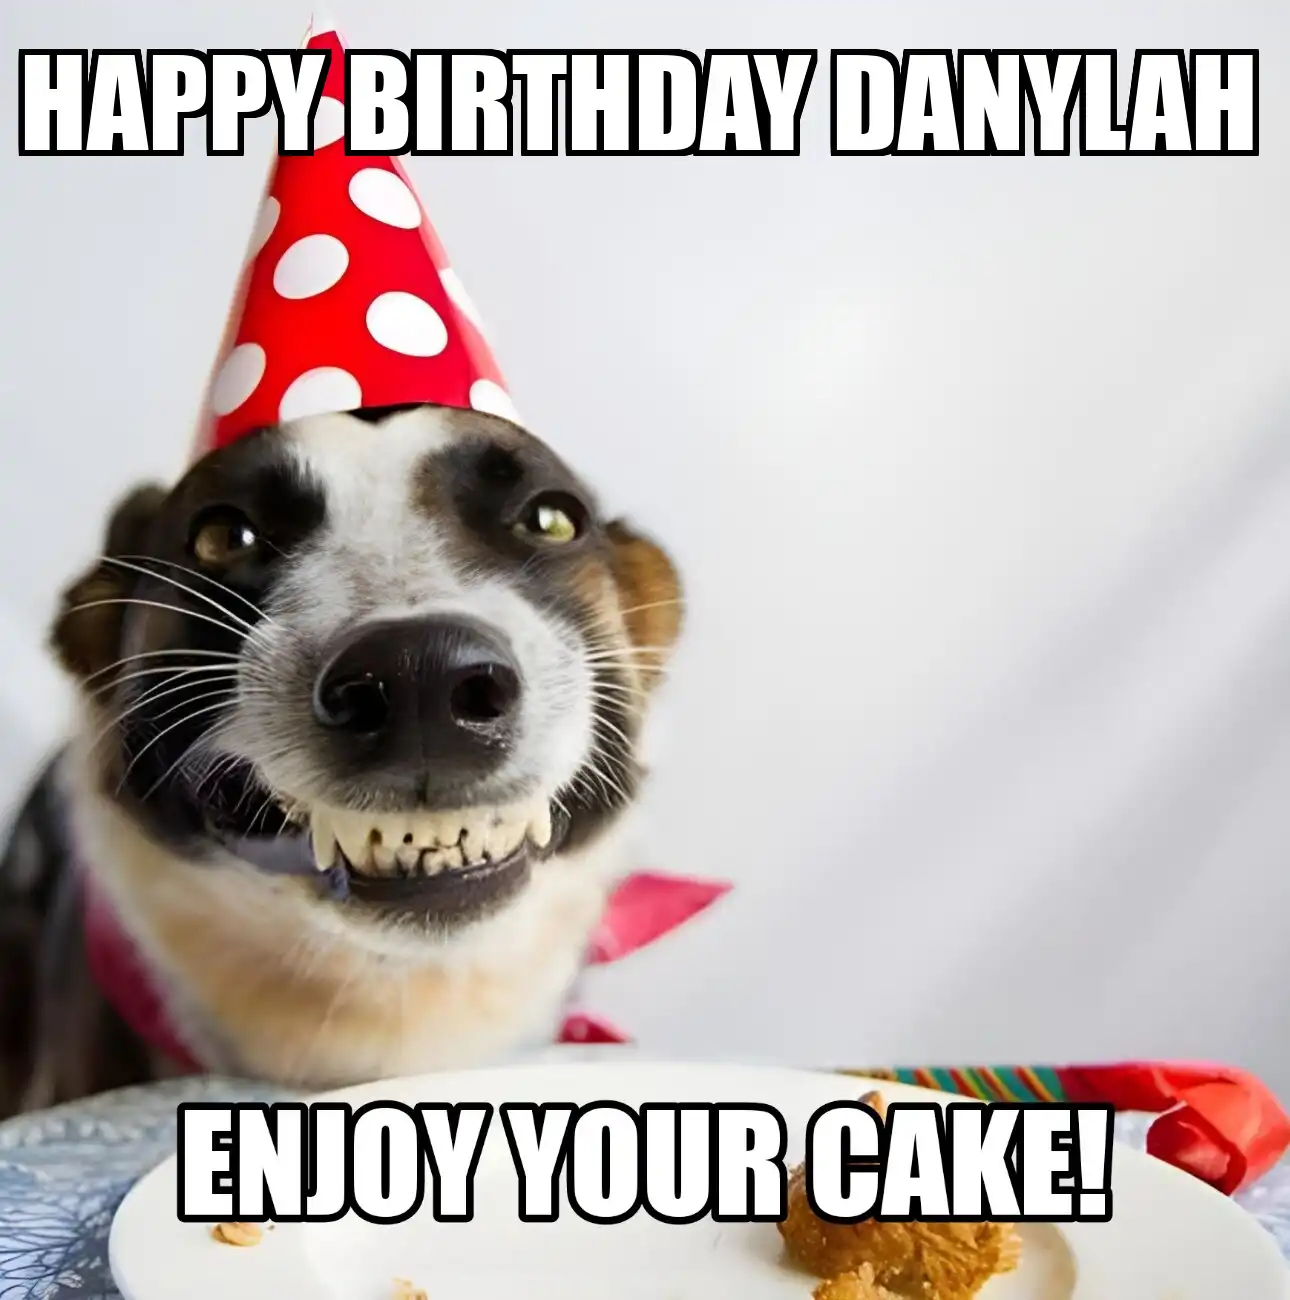 Happy Birthday Danylah Enjoy Your Cake Dog Meme